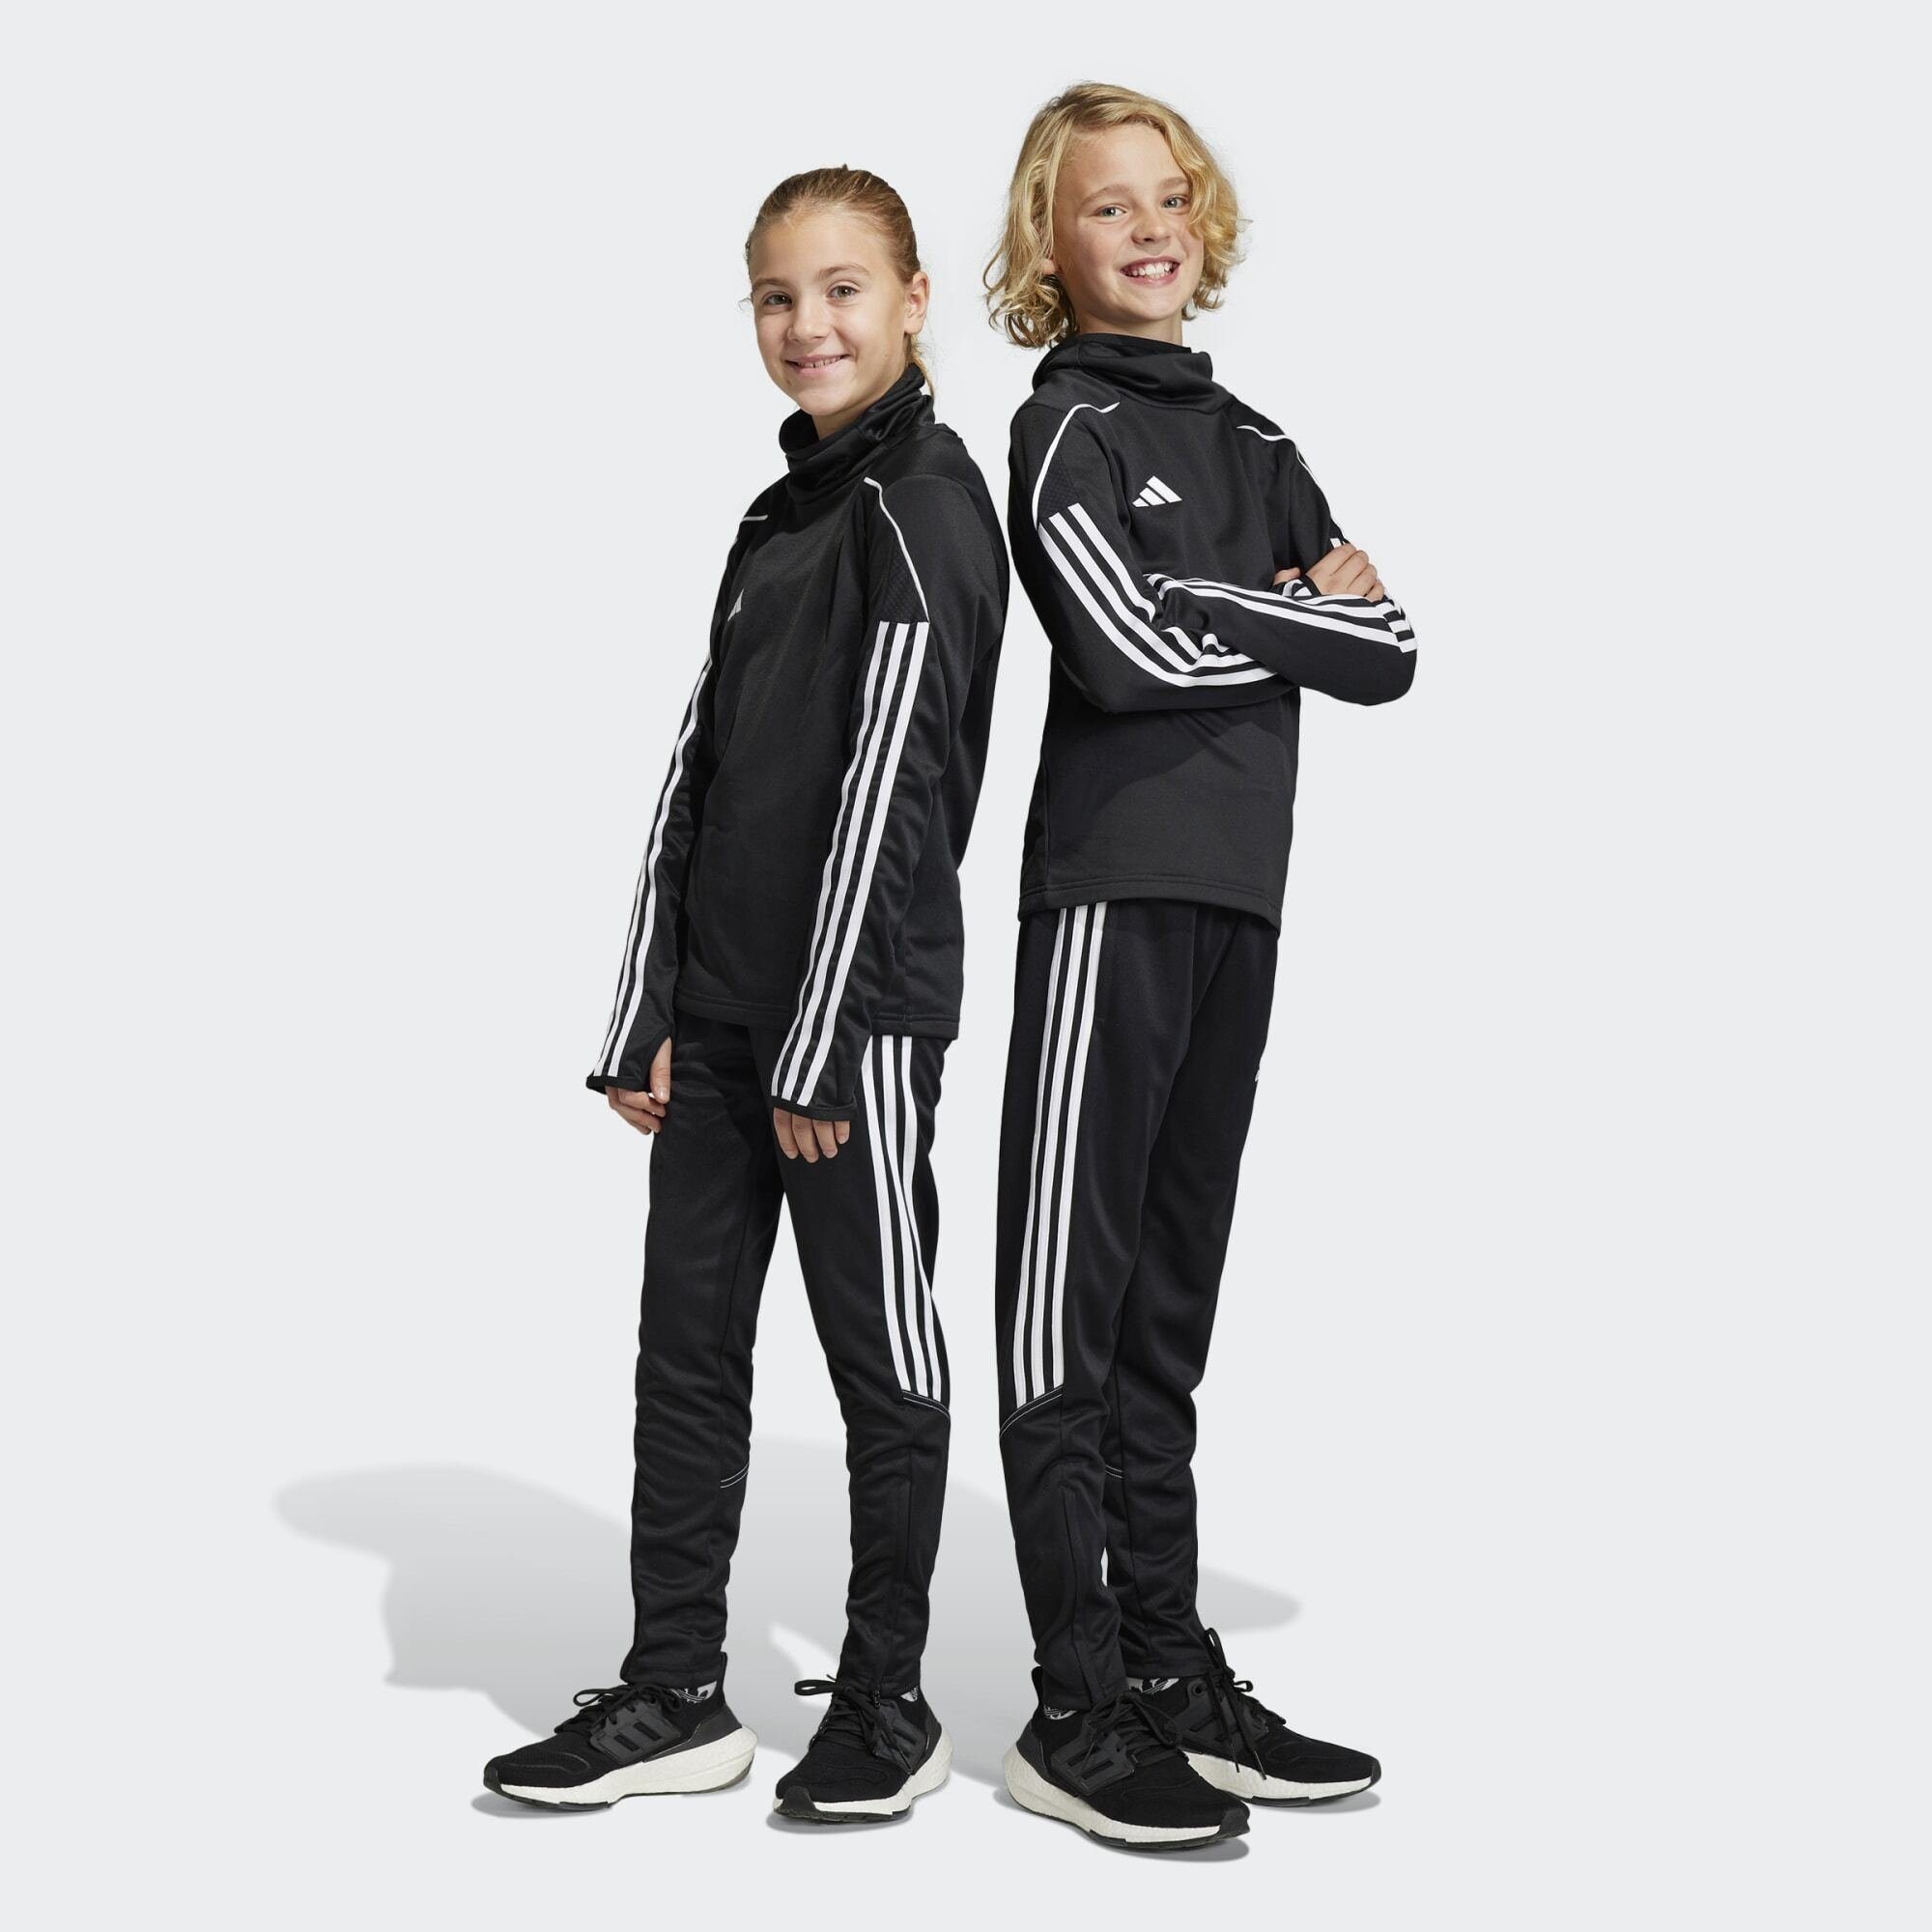 23 Performance TIRO adidas CLUB TRAININGSHOSE / Black Leichtathletik-Hose White